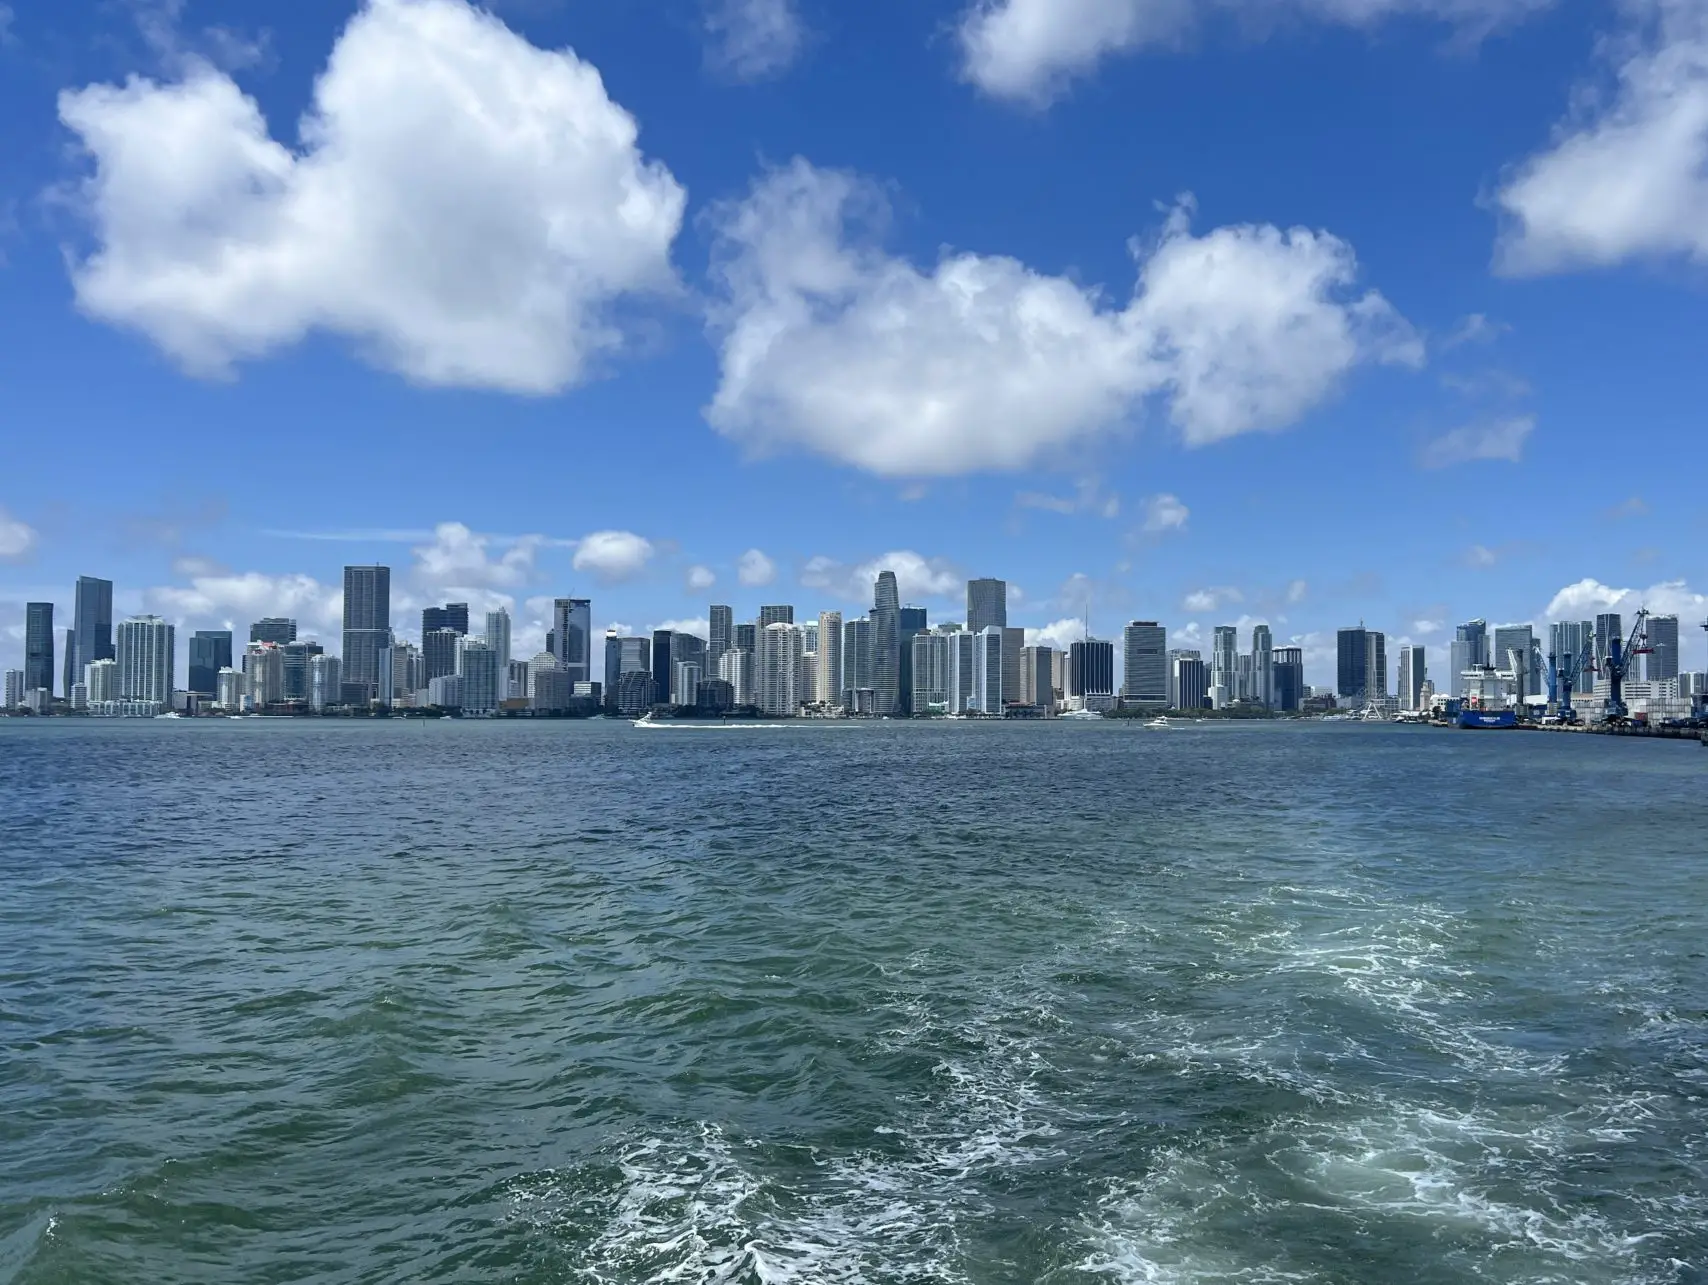 Boat tour around Miami in Florida, USA.